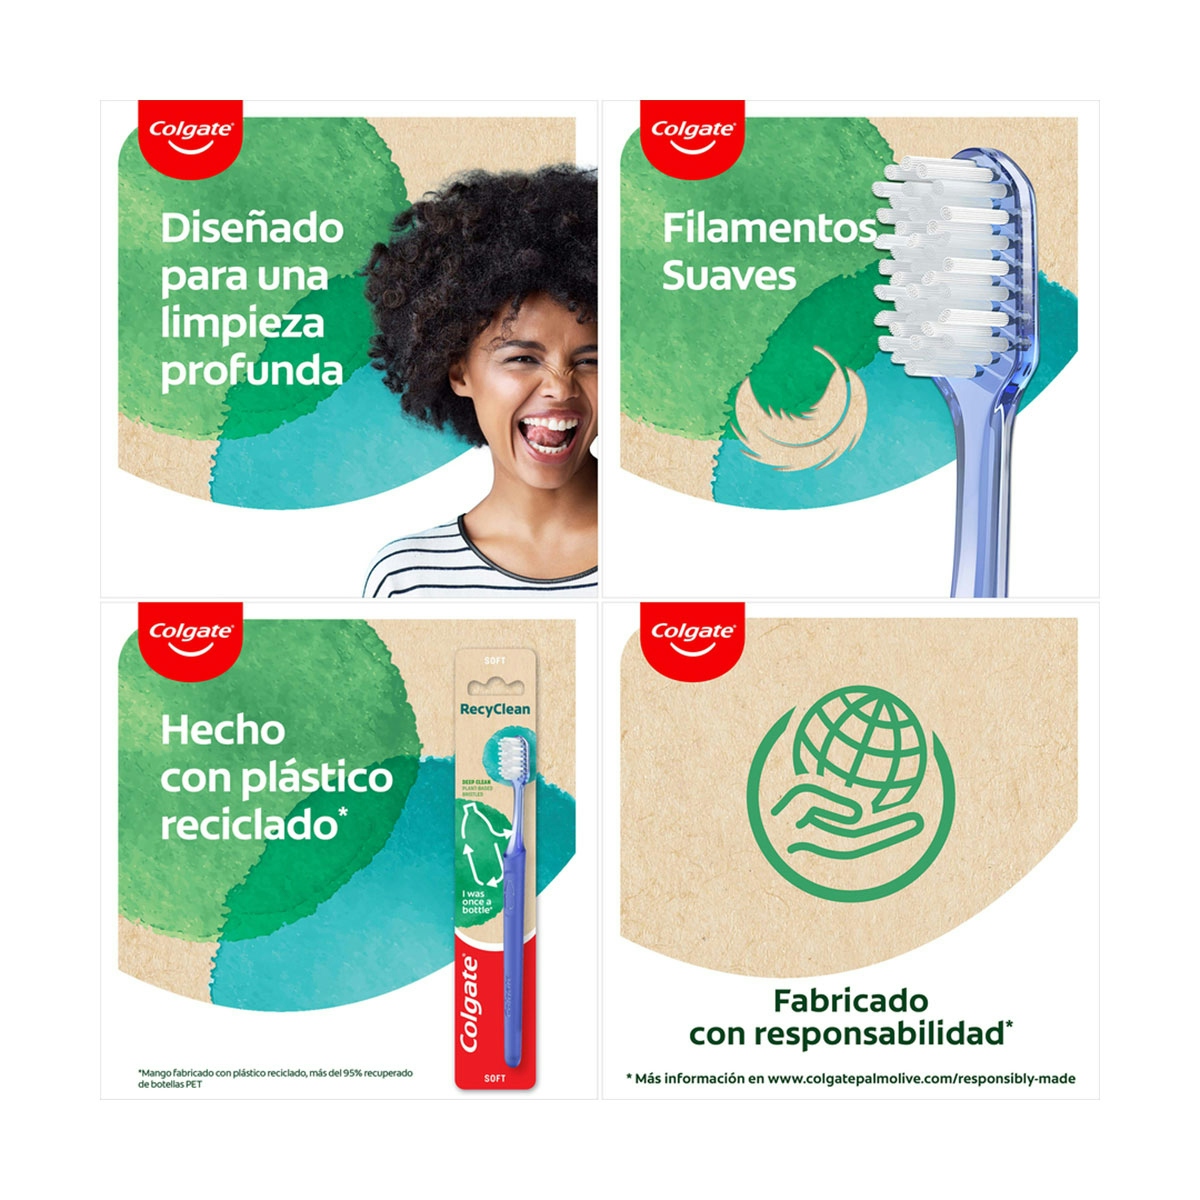 Cepillo de dientes Colgate RecyClean, 95% plástico reciclado, suave